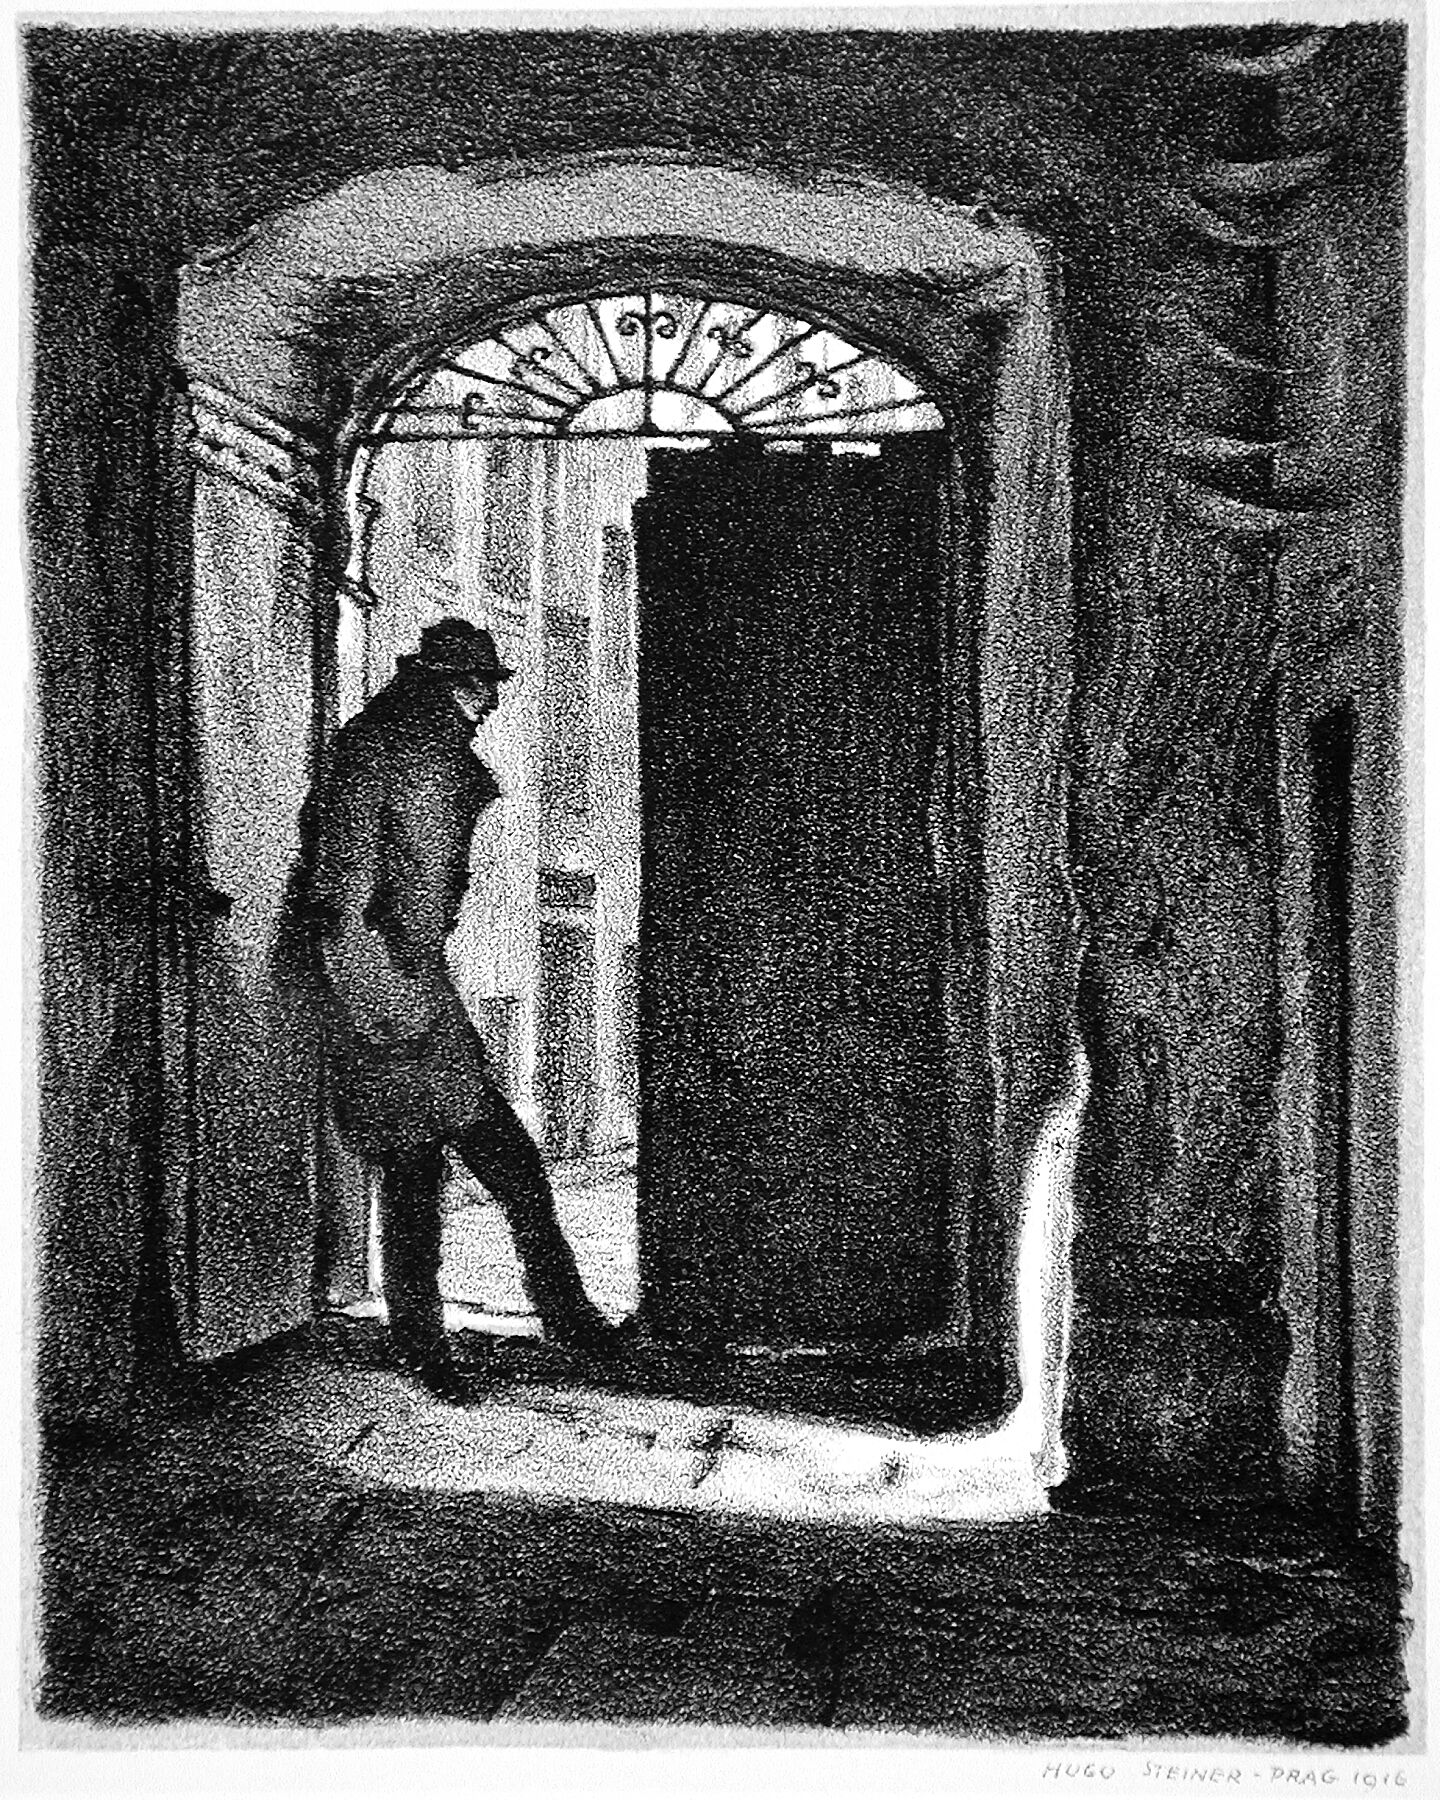 The student Charousek (Alternate Title: Der Student Charousek) by Hugo Steiner-Prag - 1915-1916